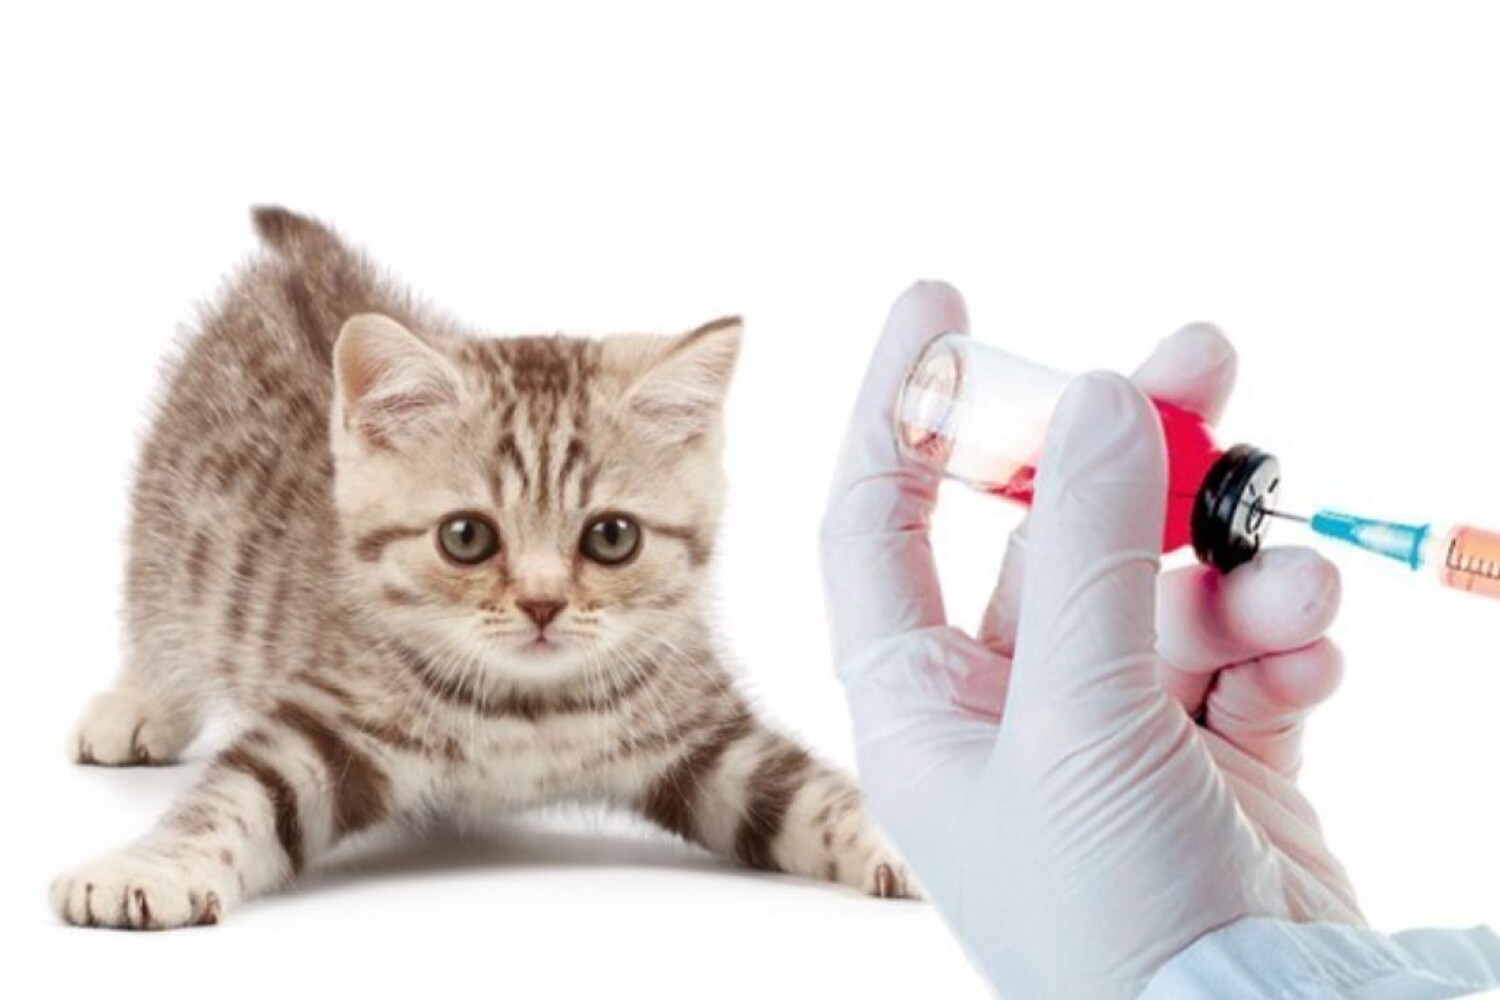 Бесплатные прививки для кошек в москве. Вакцинация кошек. Прививка коту. Кошачьи вакцины. Котик со шприцом.